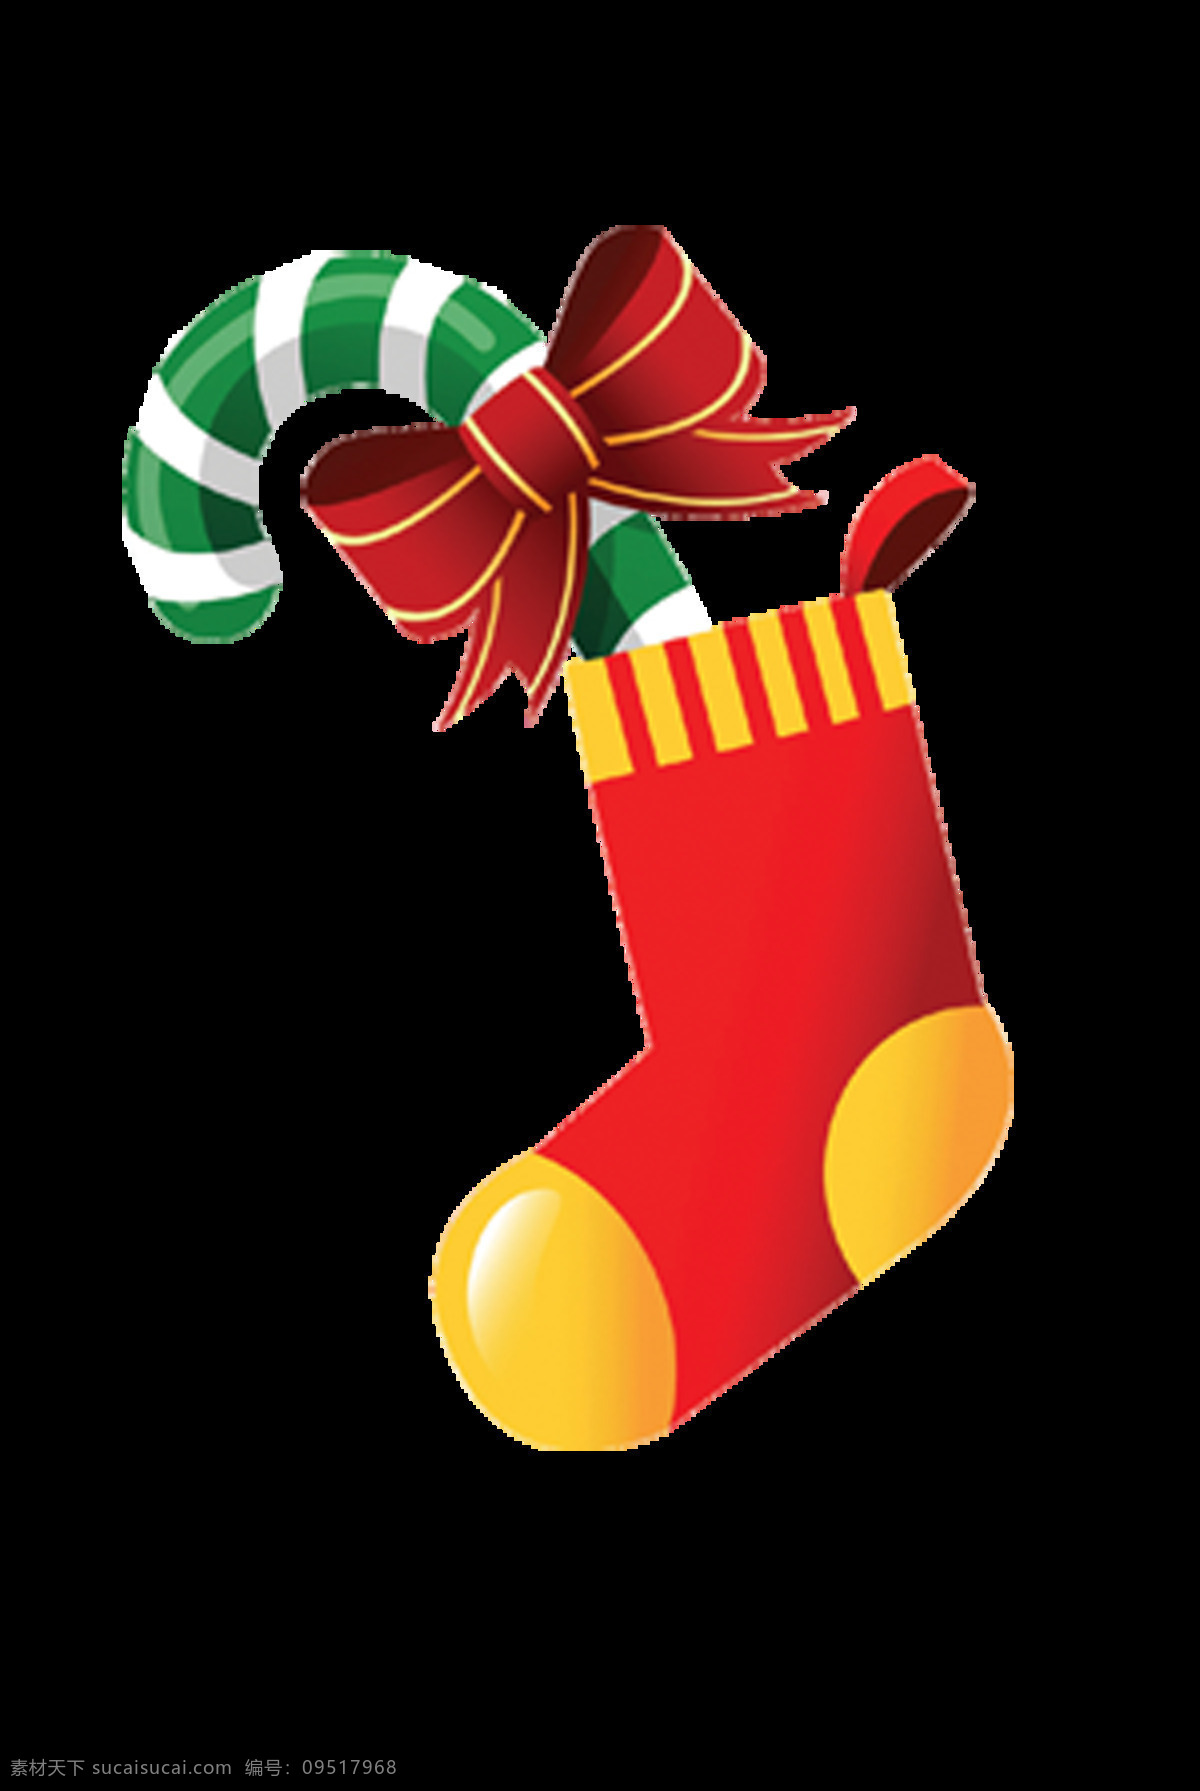 卡通 圣诞 袜 拐杖 元素 2018圣诞 christmas merry 蝴蝶结 设计素材 设计元素 圣诞拐杖 圣诞节装饰 圣诞袜 圣诞元素下载 新年快乐